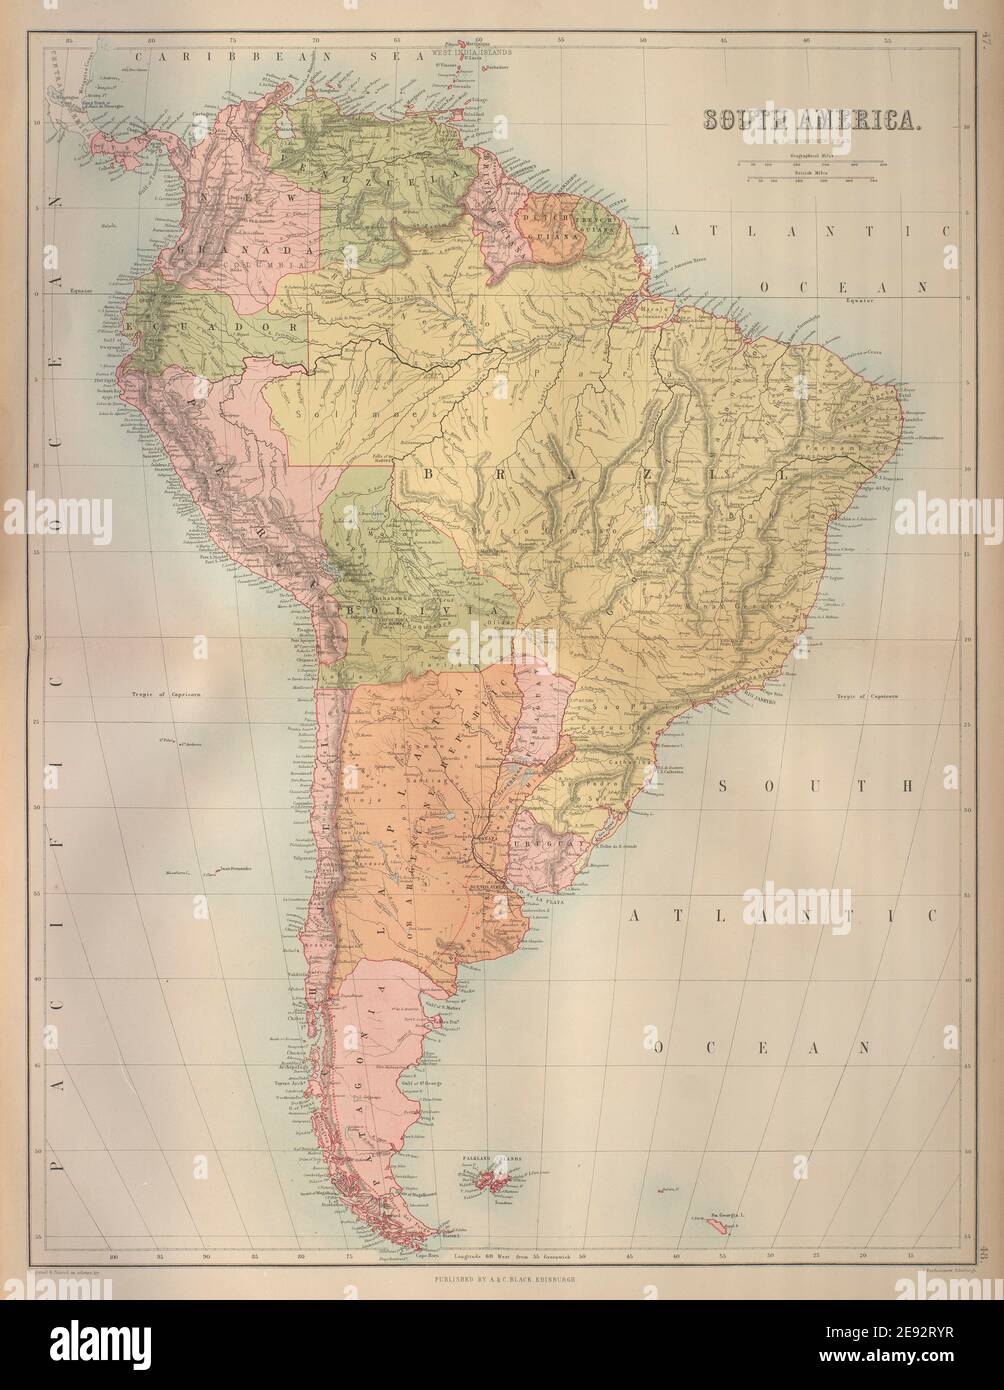 Amérique du Sud. Bolivie avec Litoral avant la guerre du Pacifique. BARTHOLOMEW 1870 carte Banque D'Images